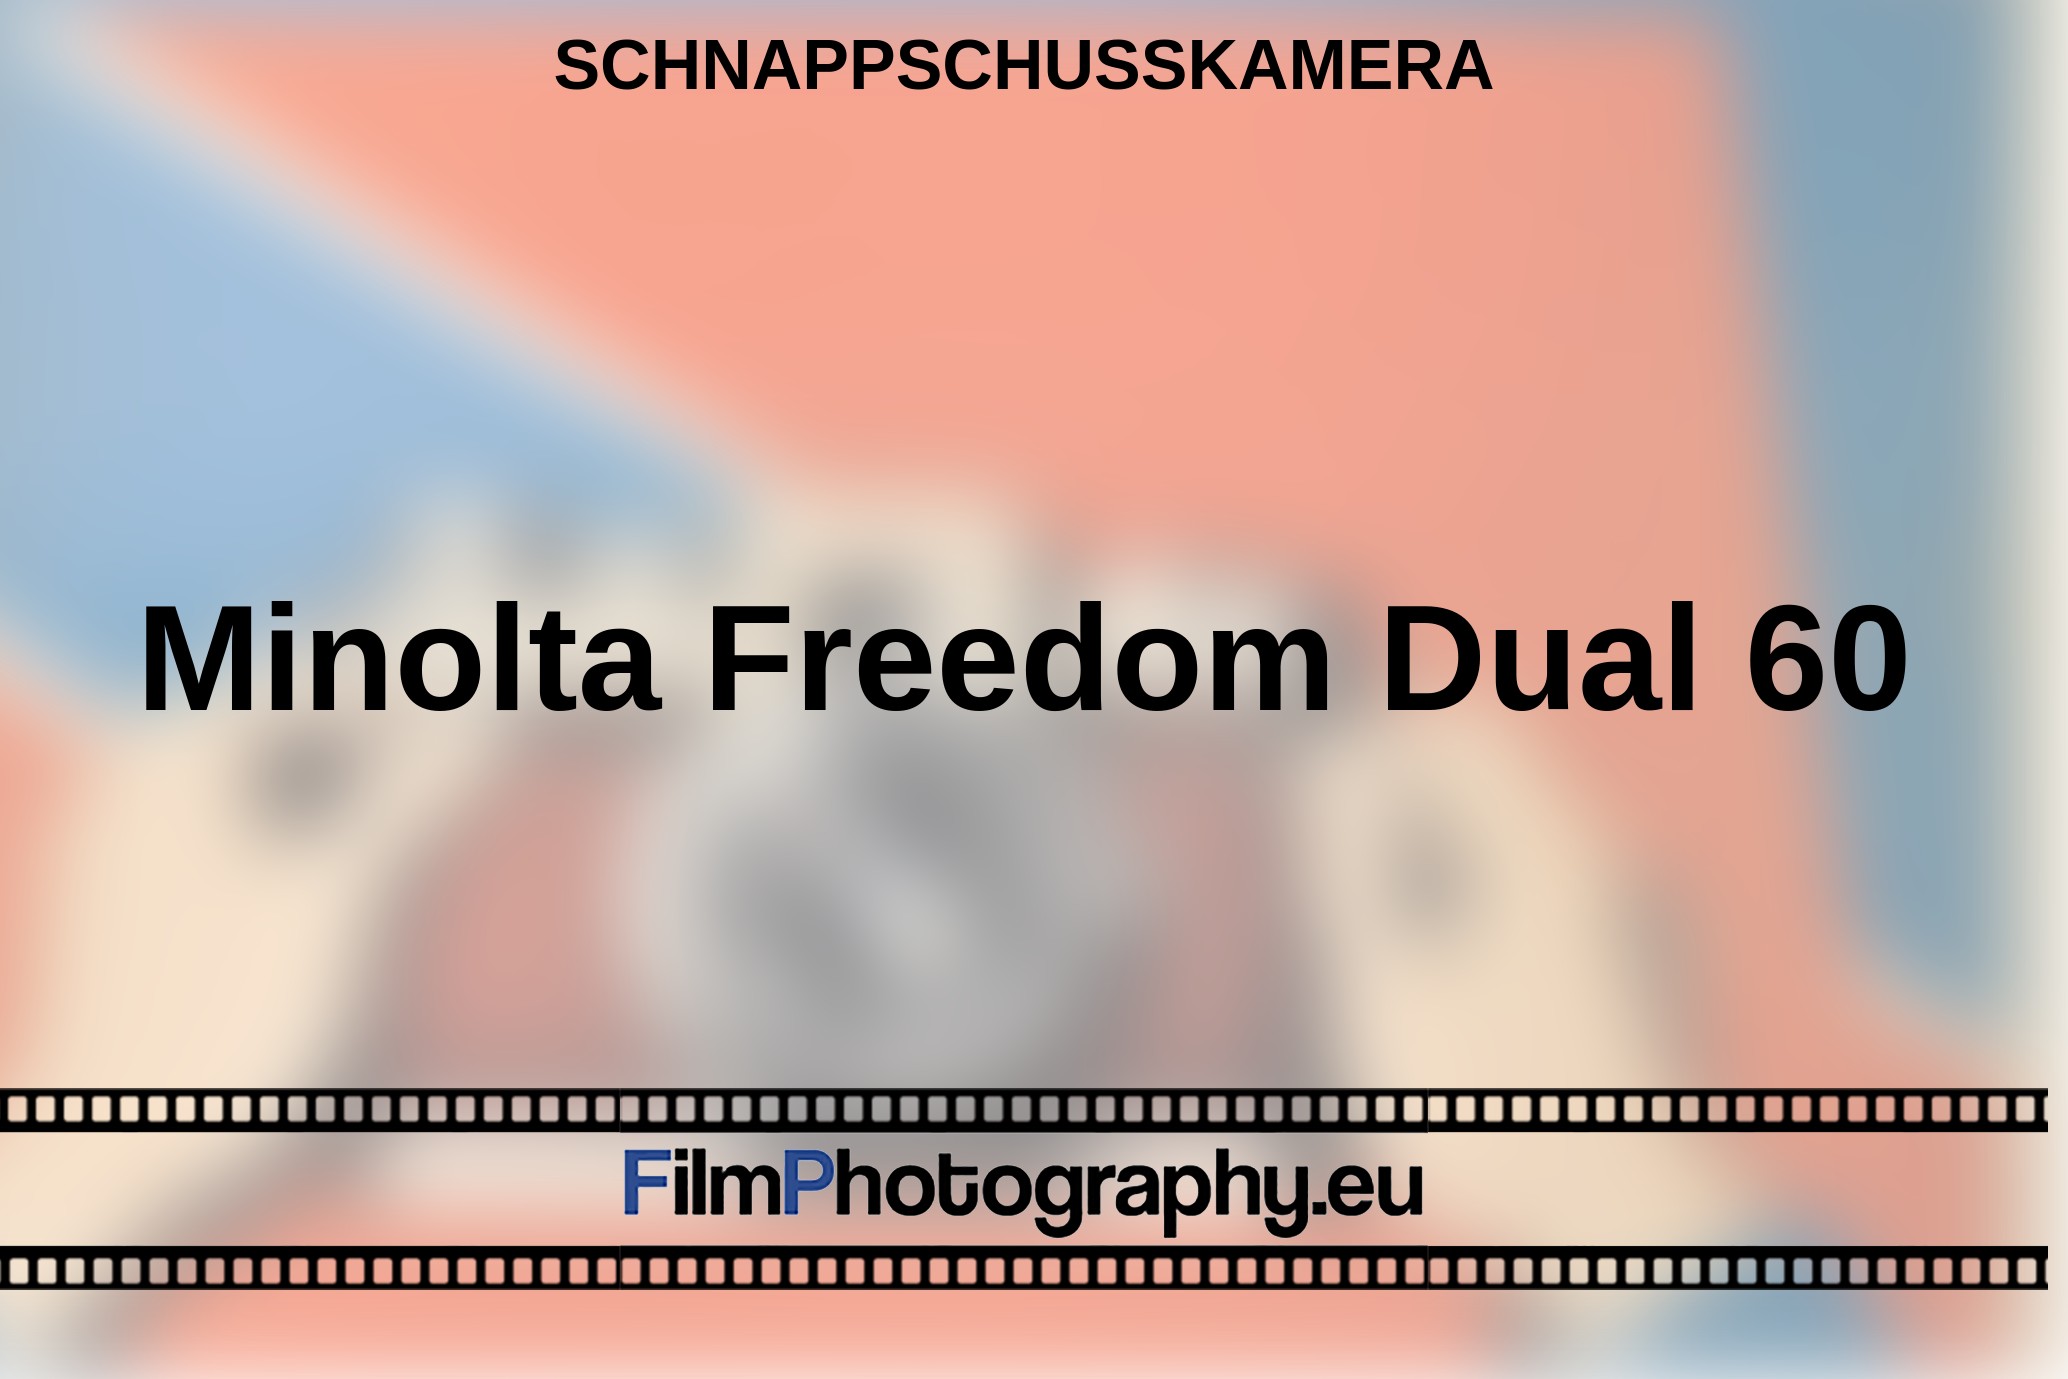 Minolta-Freedom-Dual-60-Schnappschusskamera-bnv.jpg